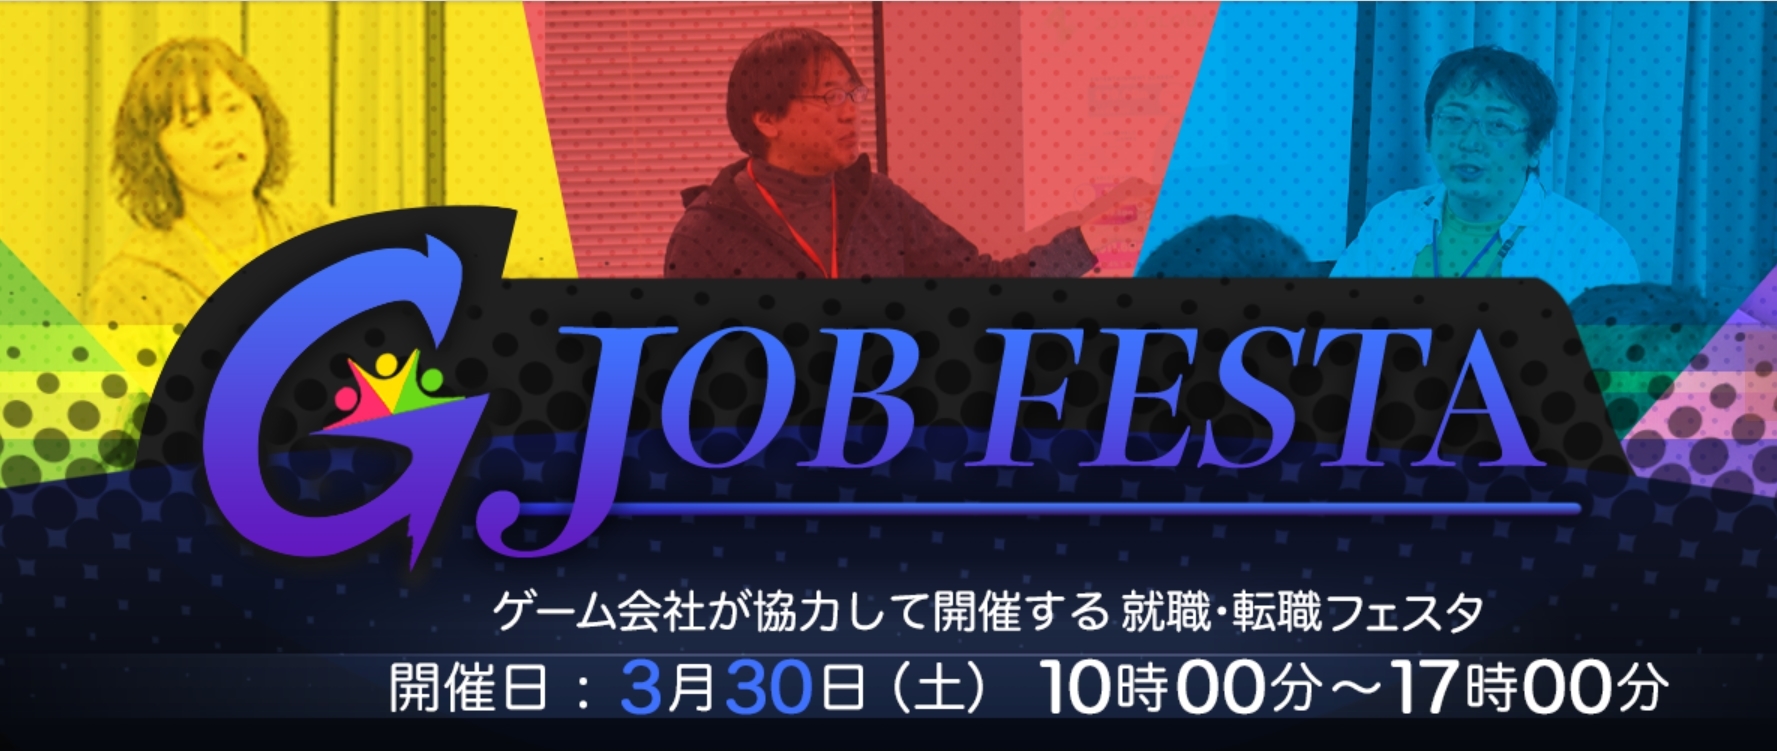 ゲーム会社十数社が共同開催の採用イベント「ゲーム業界就職・転職イベント G JOB FESTA TOKYO 2019」に出展